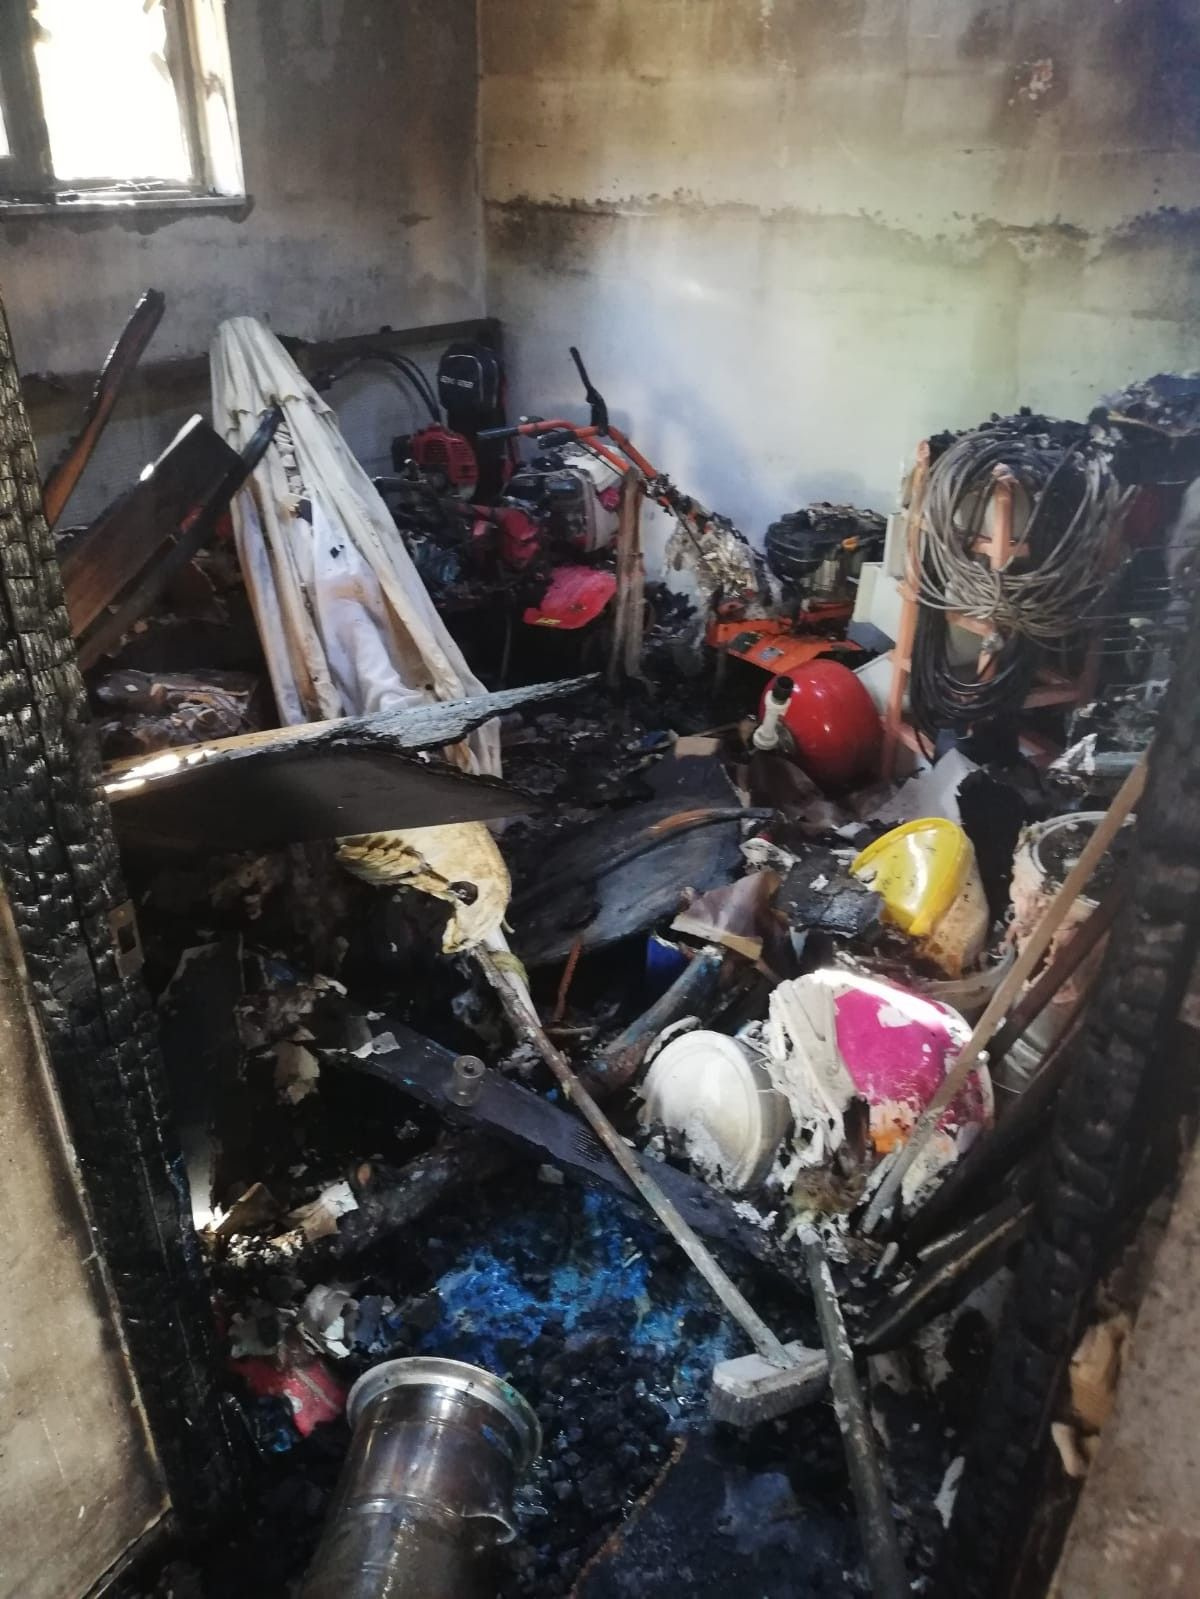 Sakarya'da 4 kişilik aile yanarak öldü! Felaketin boyutu ortaya çıktı: Geriye enkaz yığını kaldı